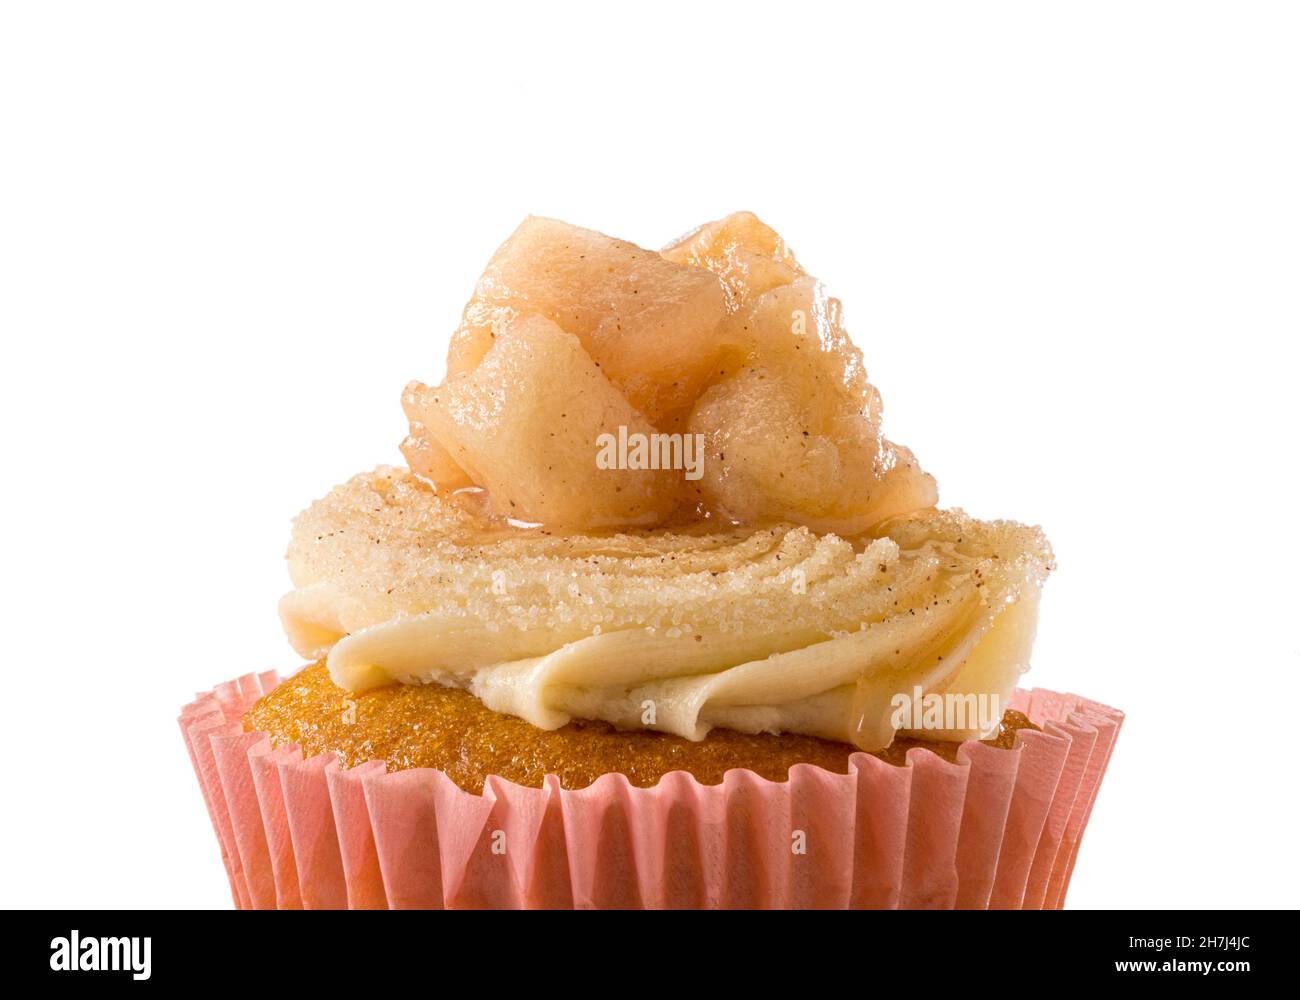 Détail cupcake aux pommes Banque D'Images